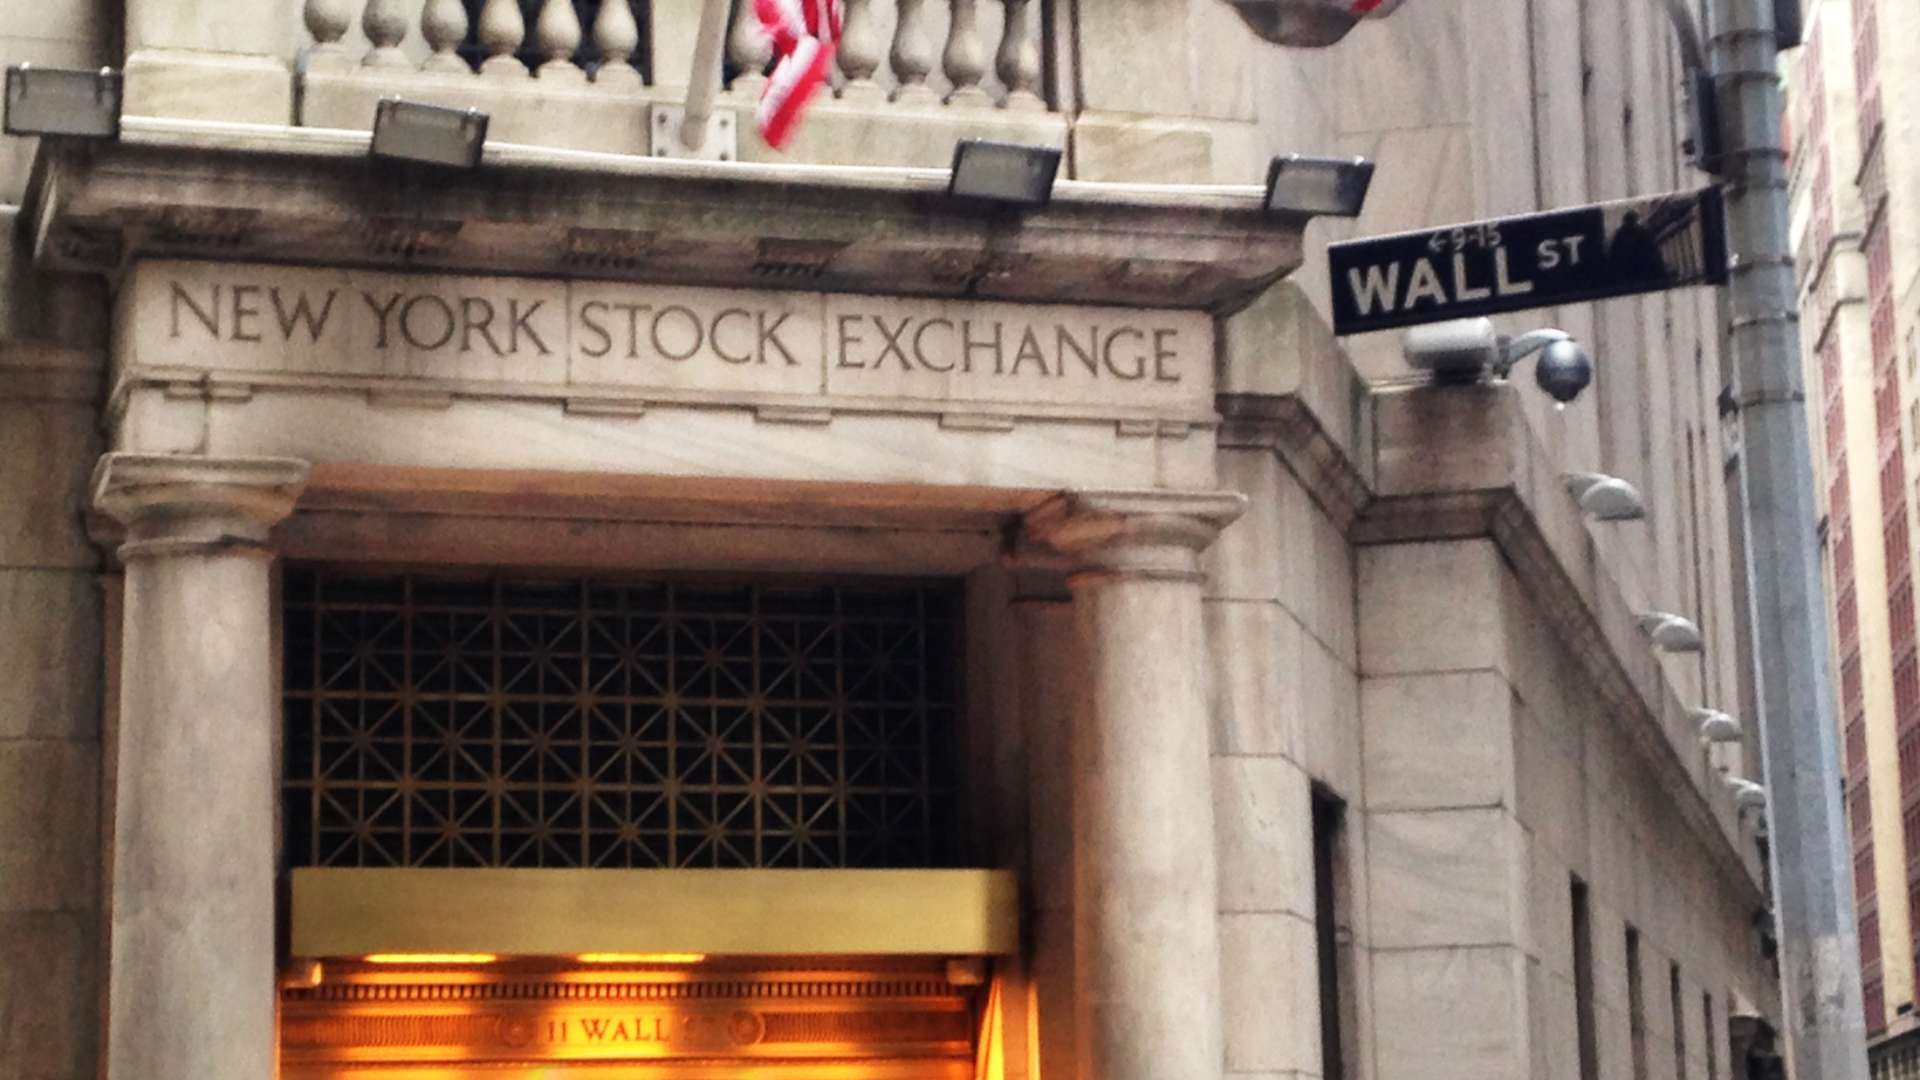 Understanding Financial Markets - New York Stock Exchange